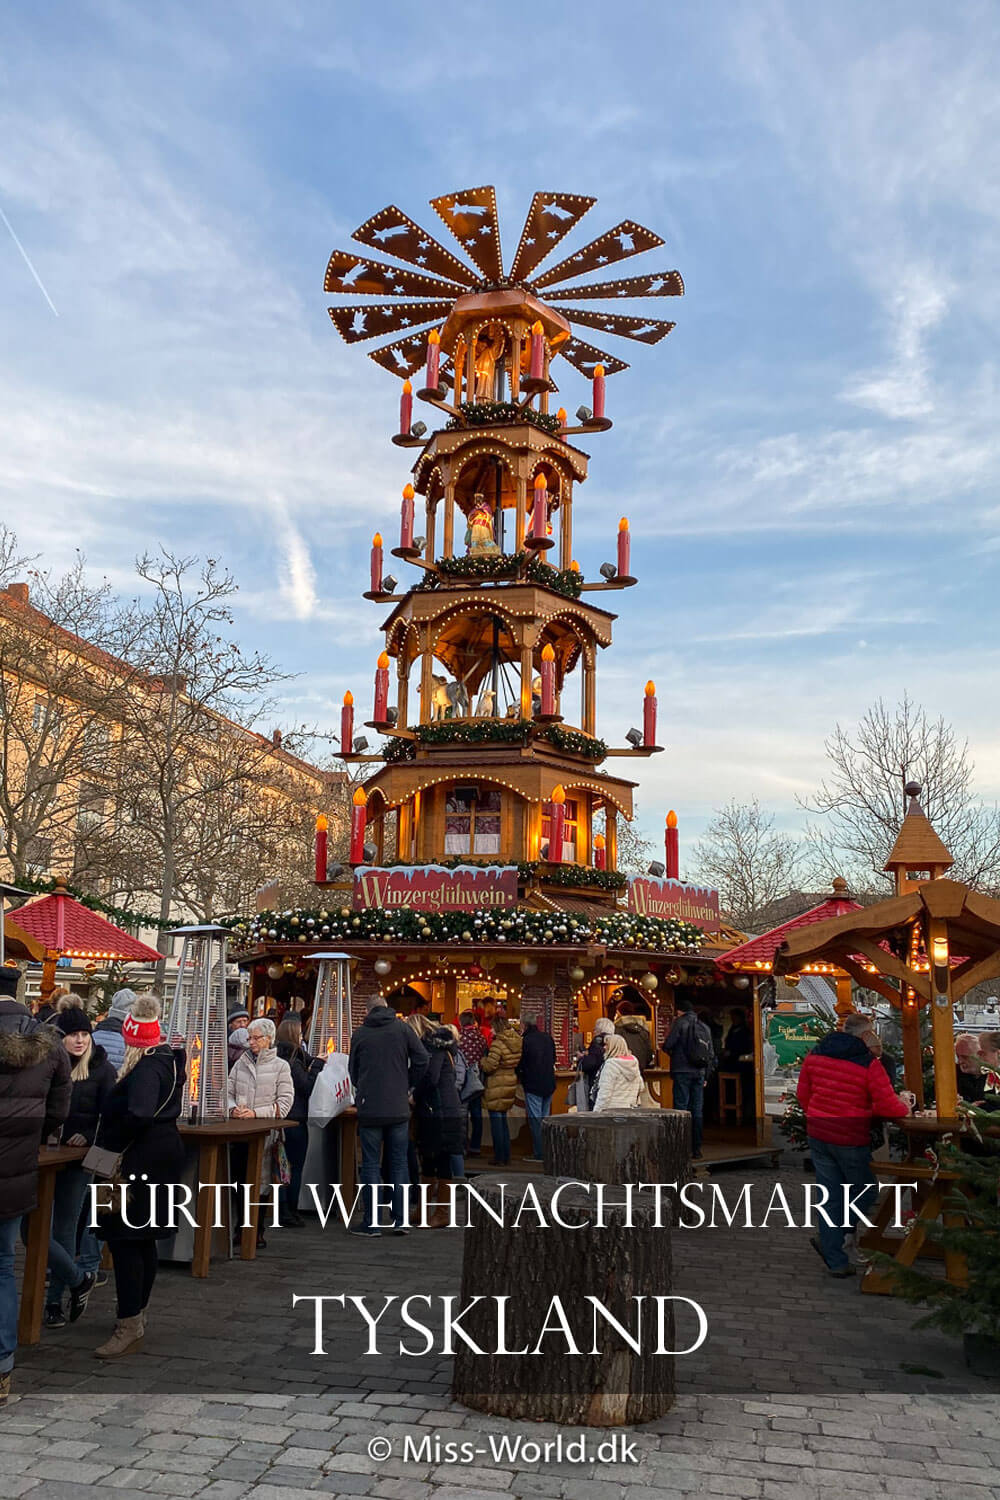 Fürth weihnachtsmarkt | Gem på Pinterest